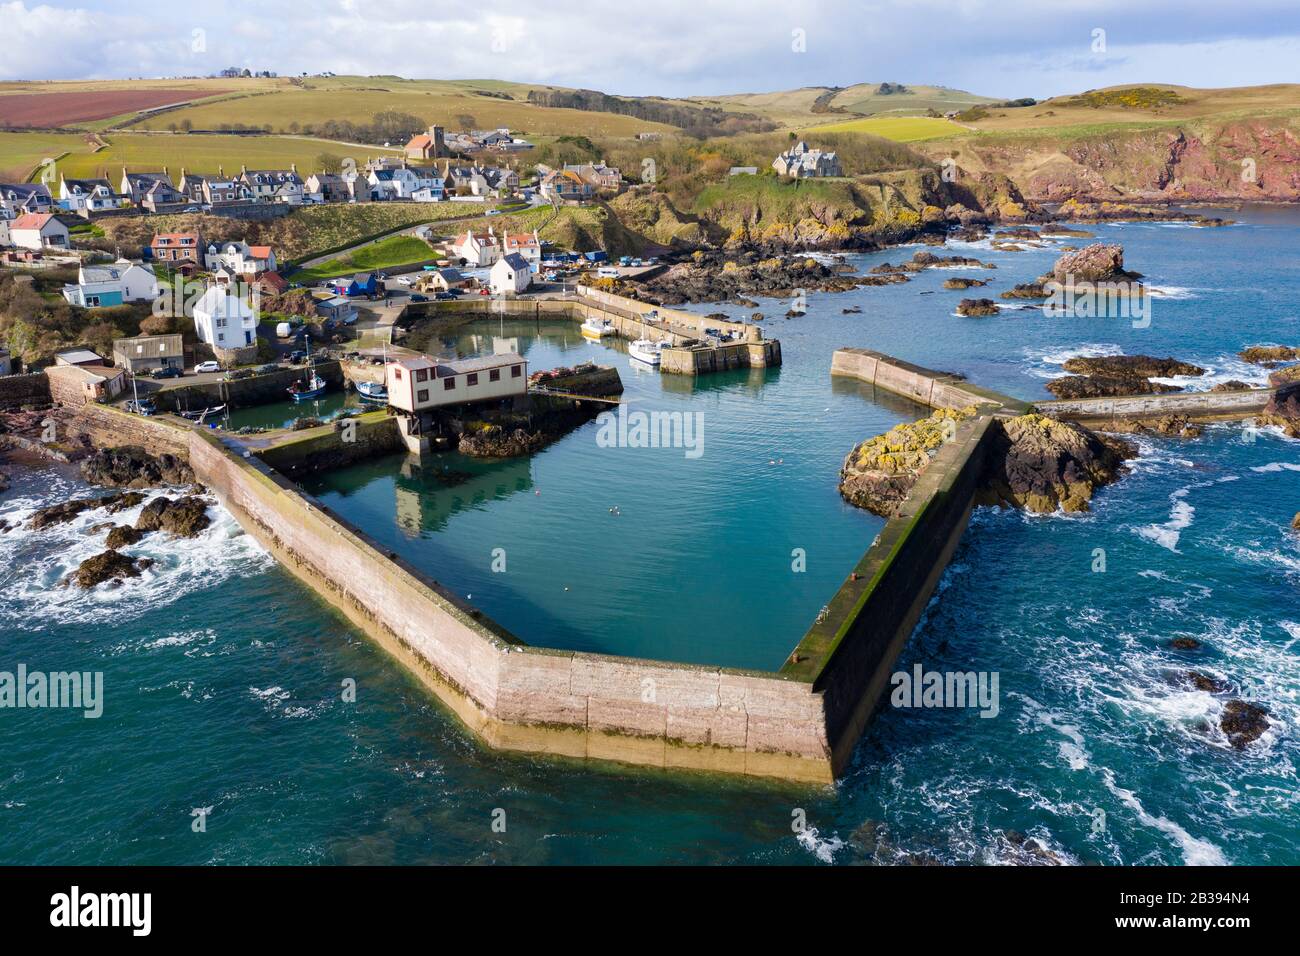 Vista aérea de un pequeño pueblo pesquero y el puerto de St Abbs en la costa del Mar del Norte en Scottish Borders, Escocia, Reino Unido Foto de stock